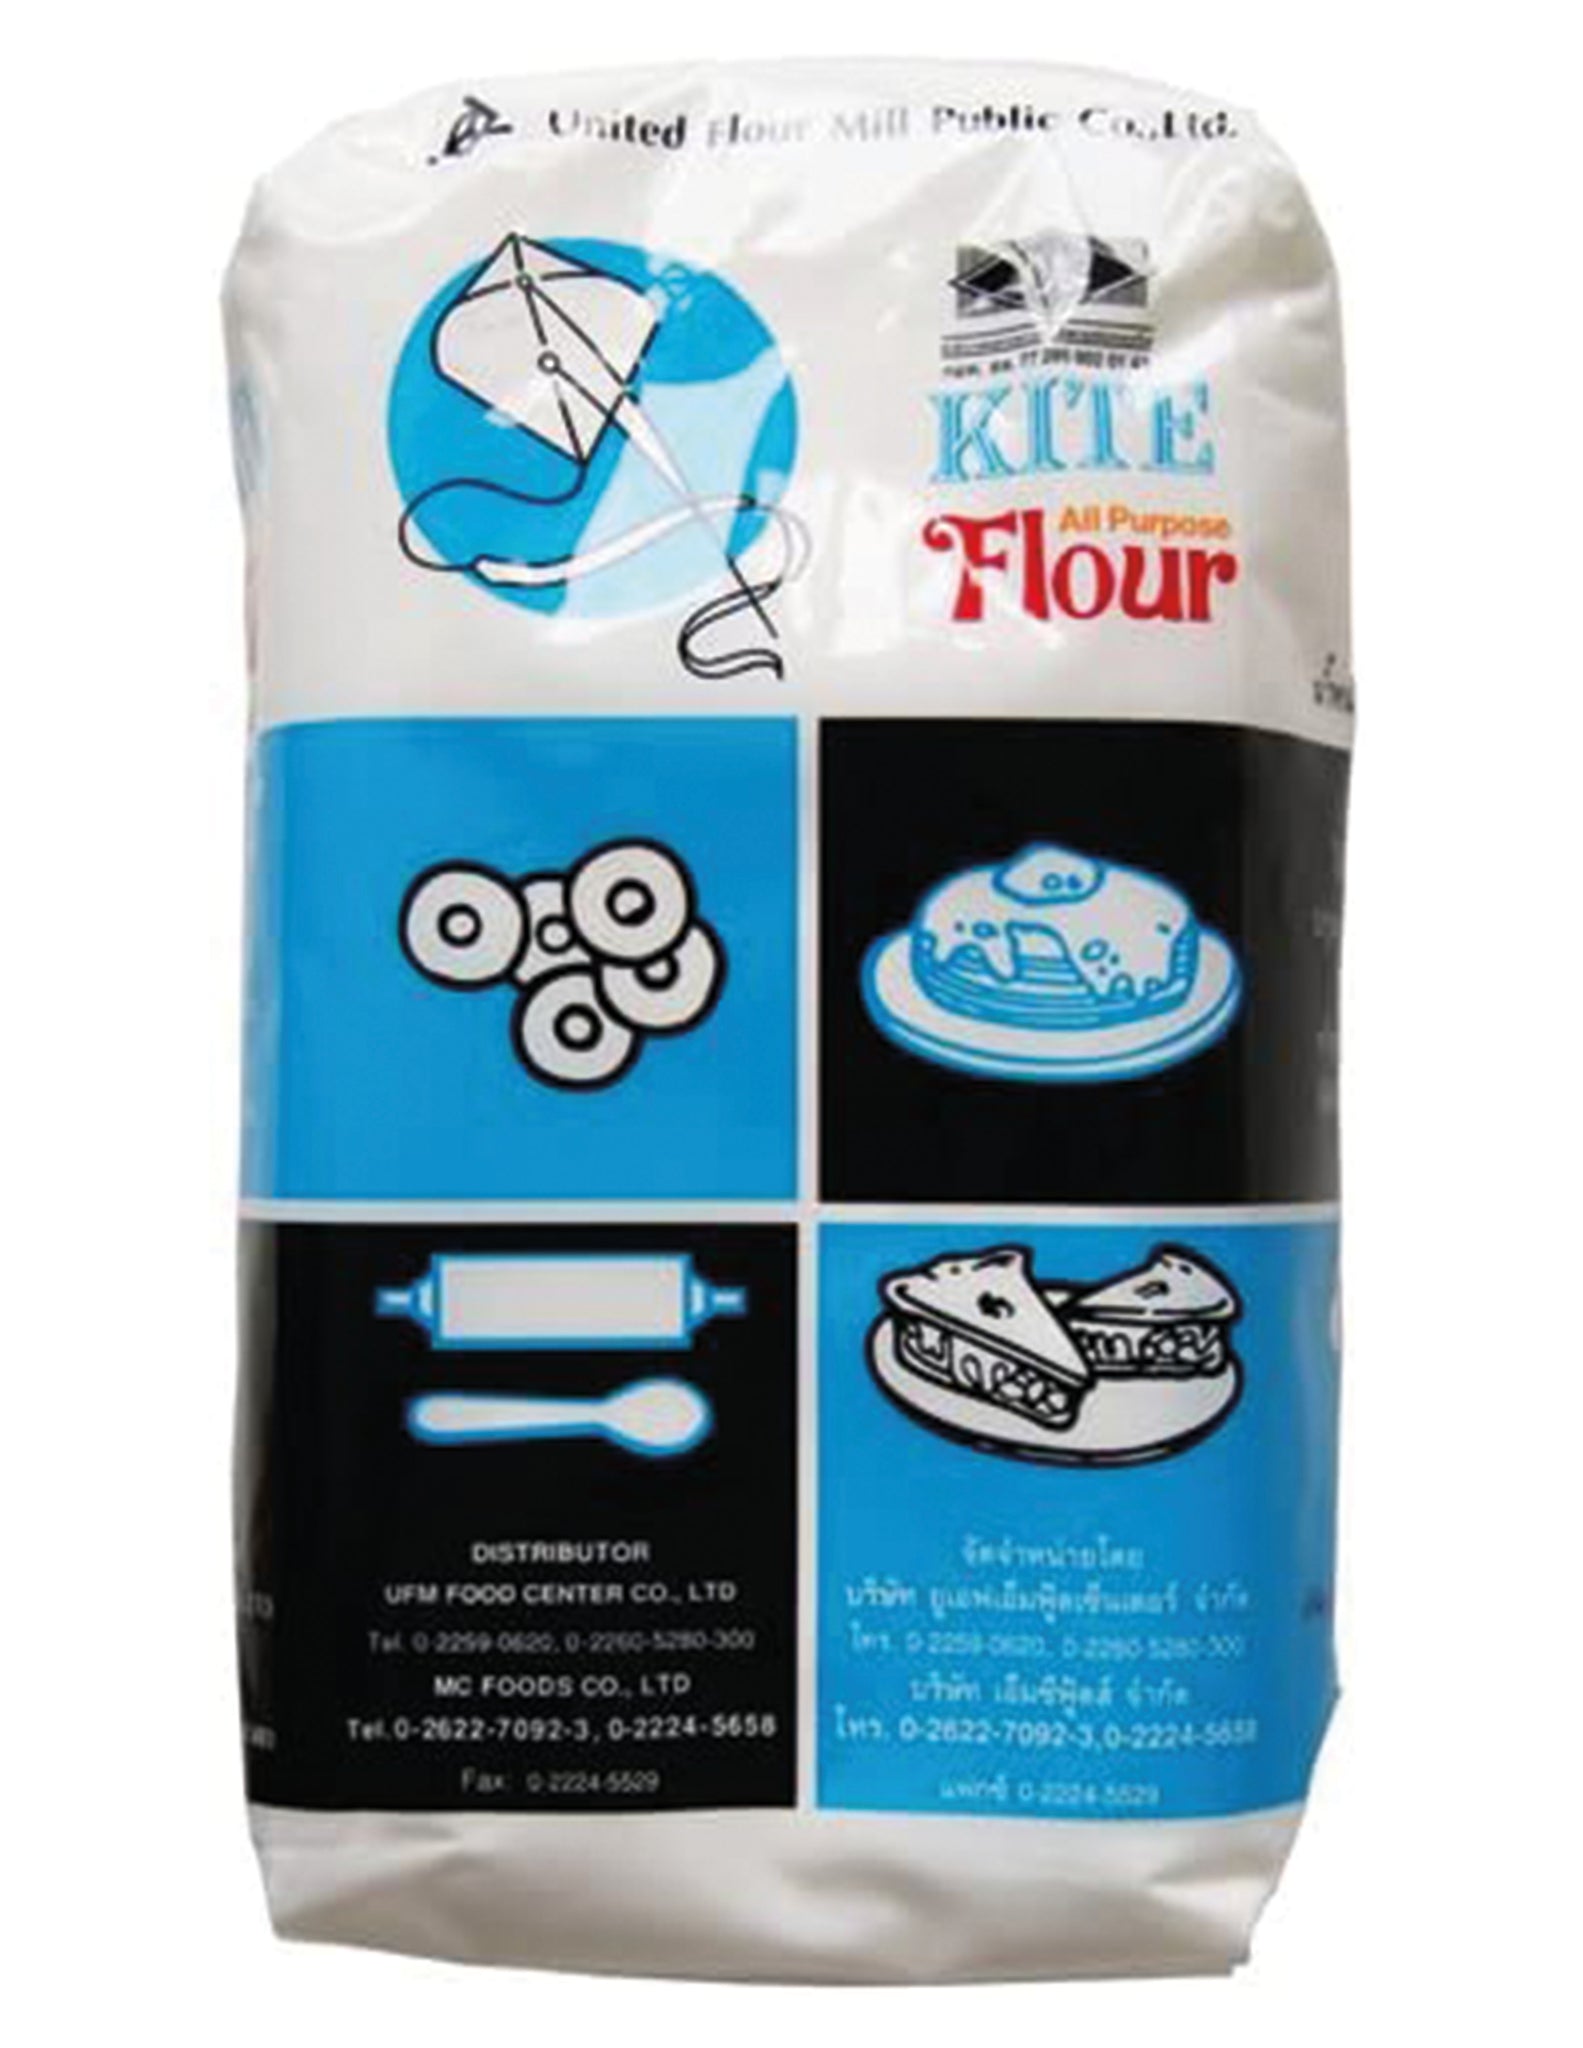 tha>Kite all purpose Flour 1 kg